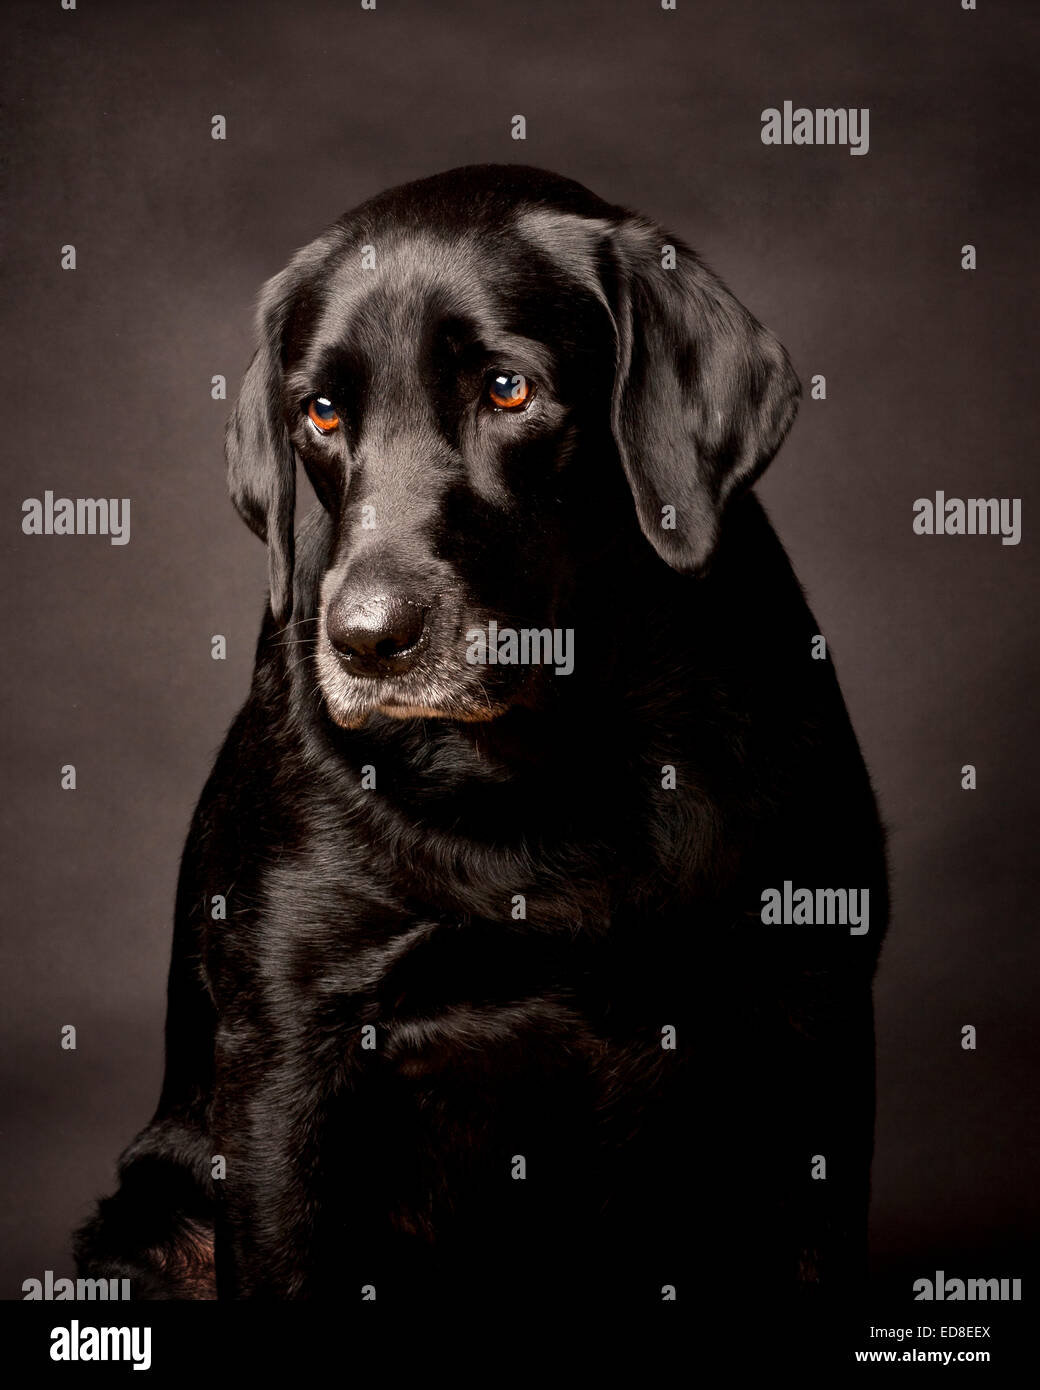 Nachdenklich, schüchtern, schwarzer Labrador.  Porträt in einem schwarzen Studio-Hintergrund. Stockfoto